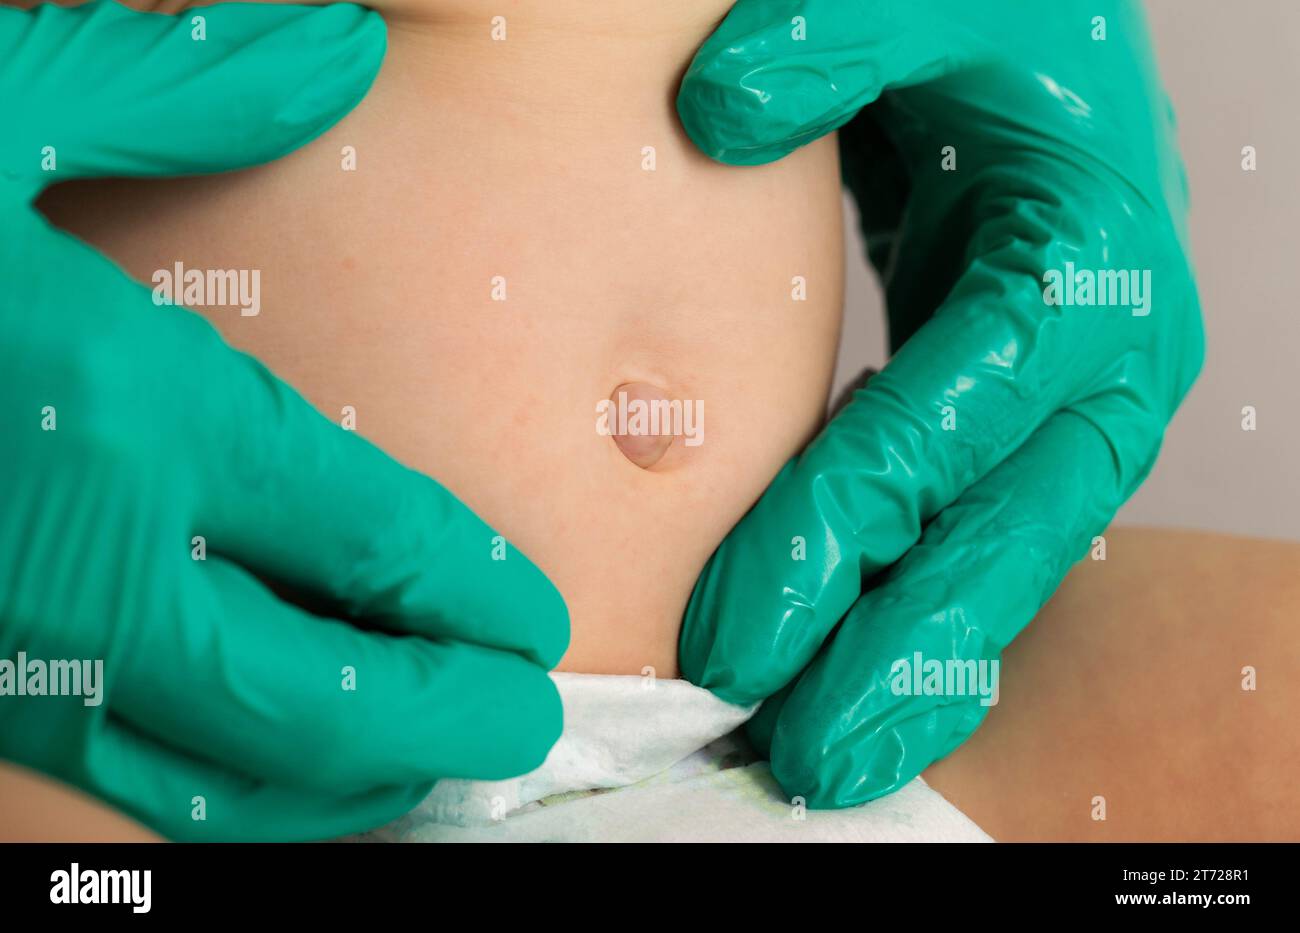 Le mani del medico in guanti medici verdi esaminano un'ernia ombelicale in un bambino, primo piano. Problemi Foto Stock